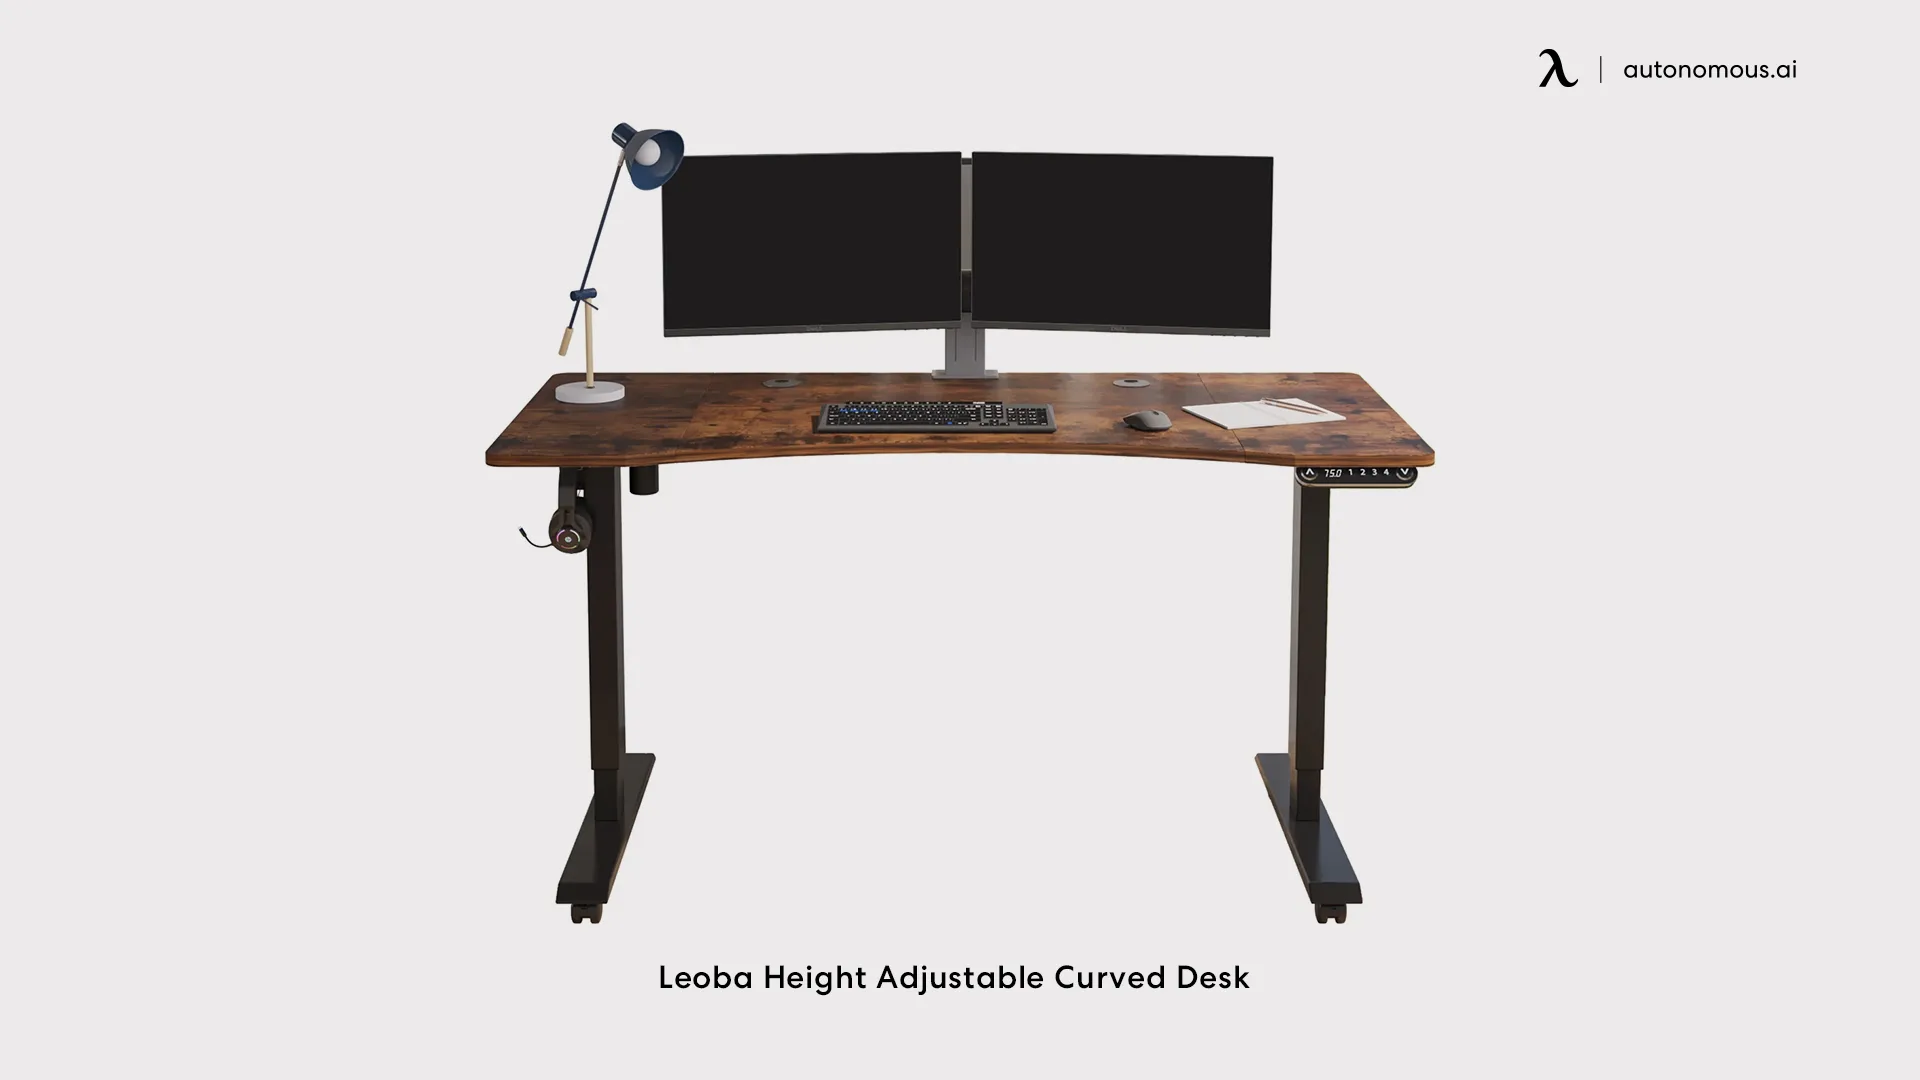 Leoba Height Adjustable Curved Desk